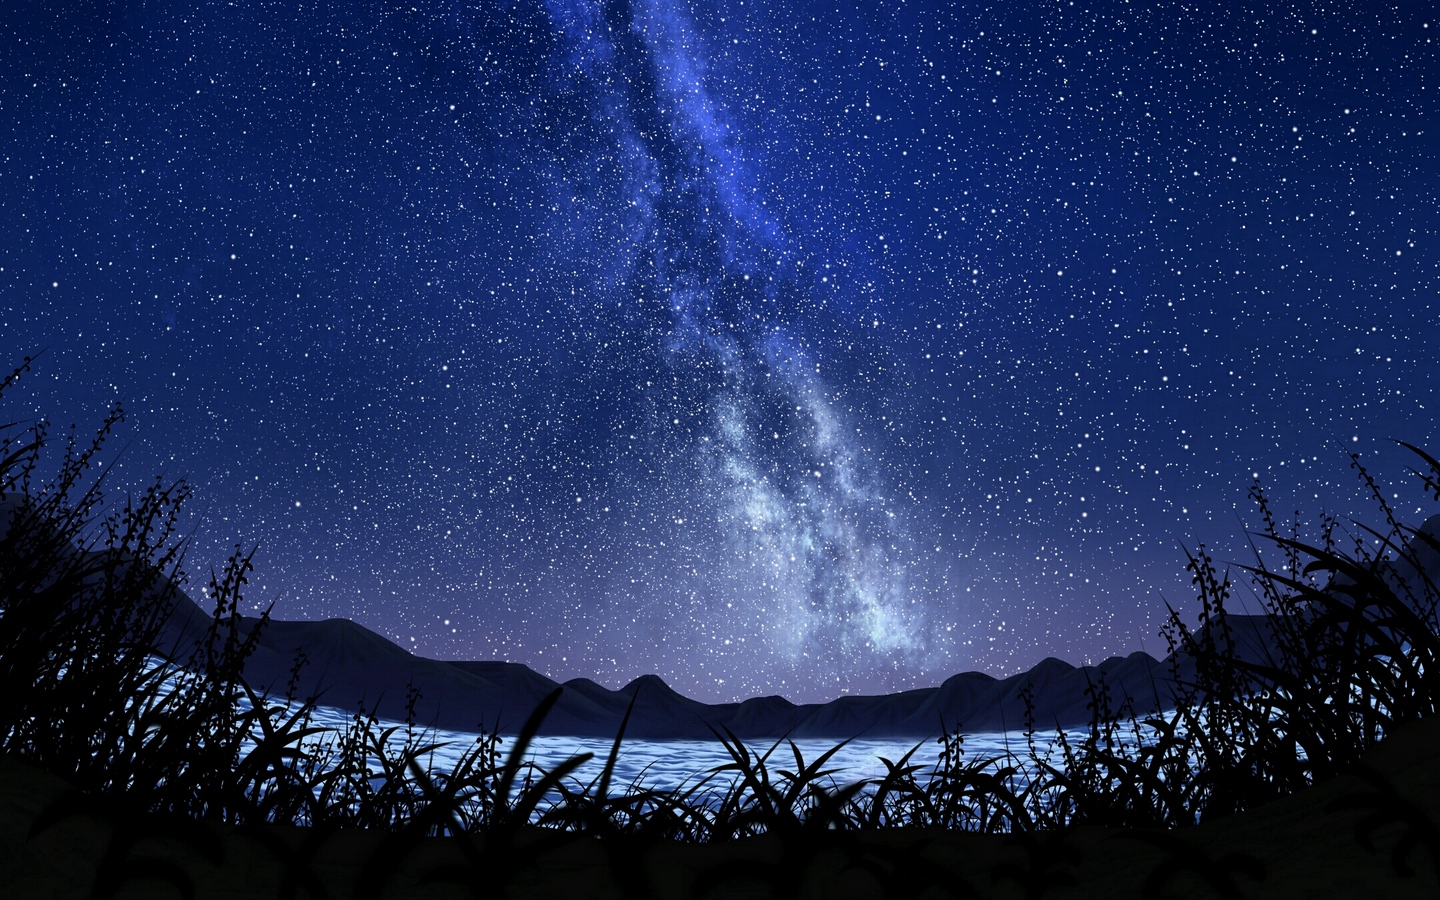 明亮夜空银河繁星星光照耀芦苇湖泊大屏高清1440x900桌面壁纸